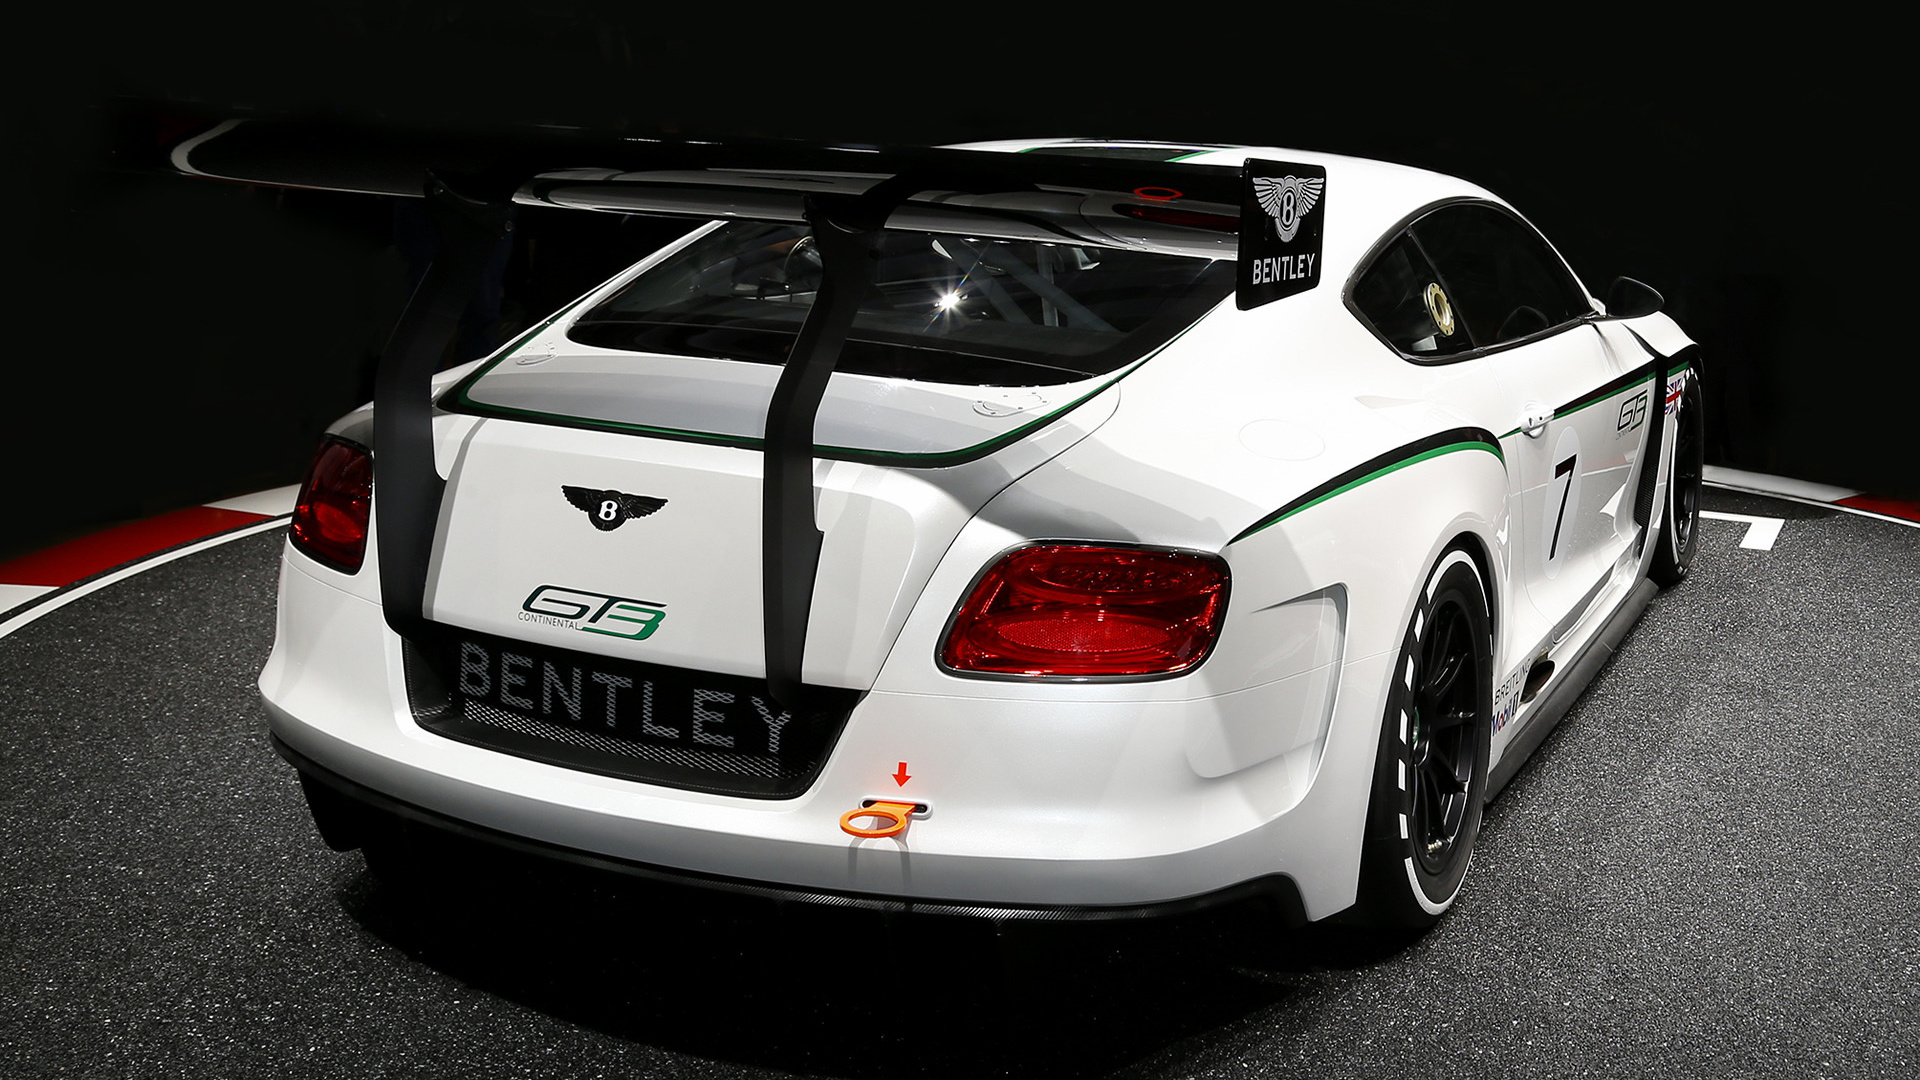 Descargar fondos de escritorio de Concepto Bentley Continental Gt3 HD